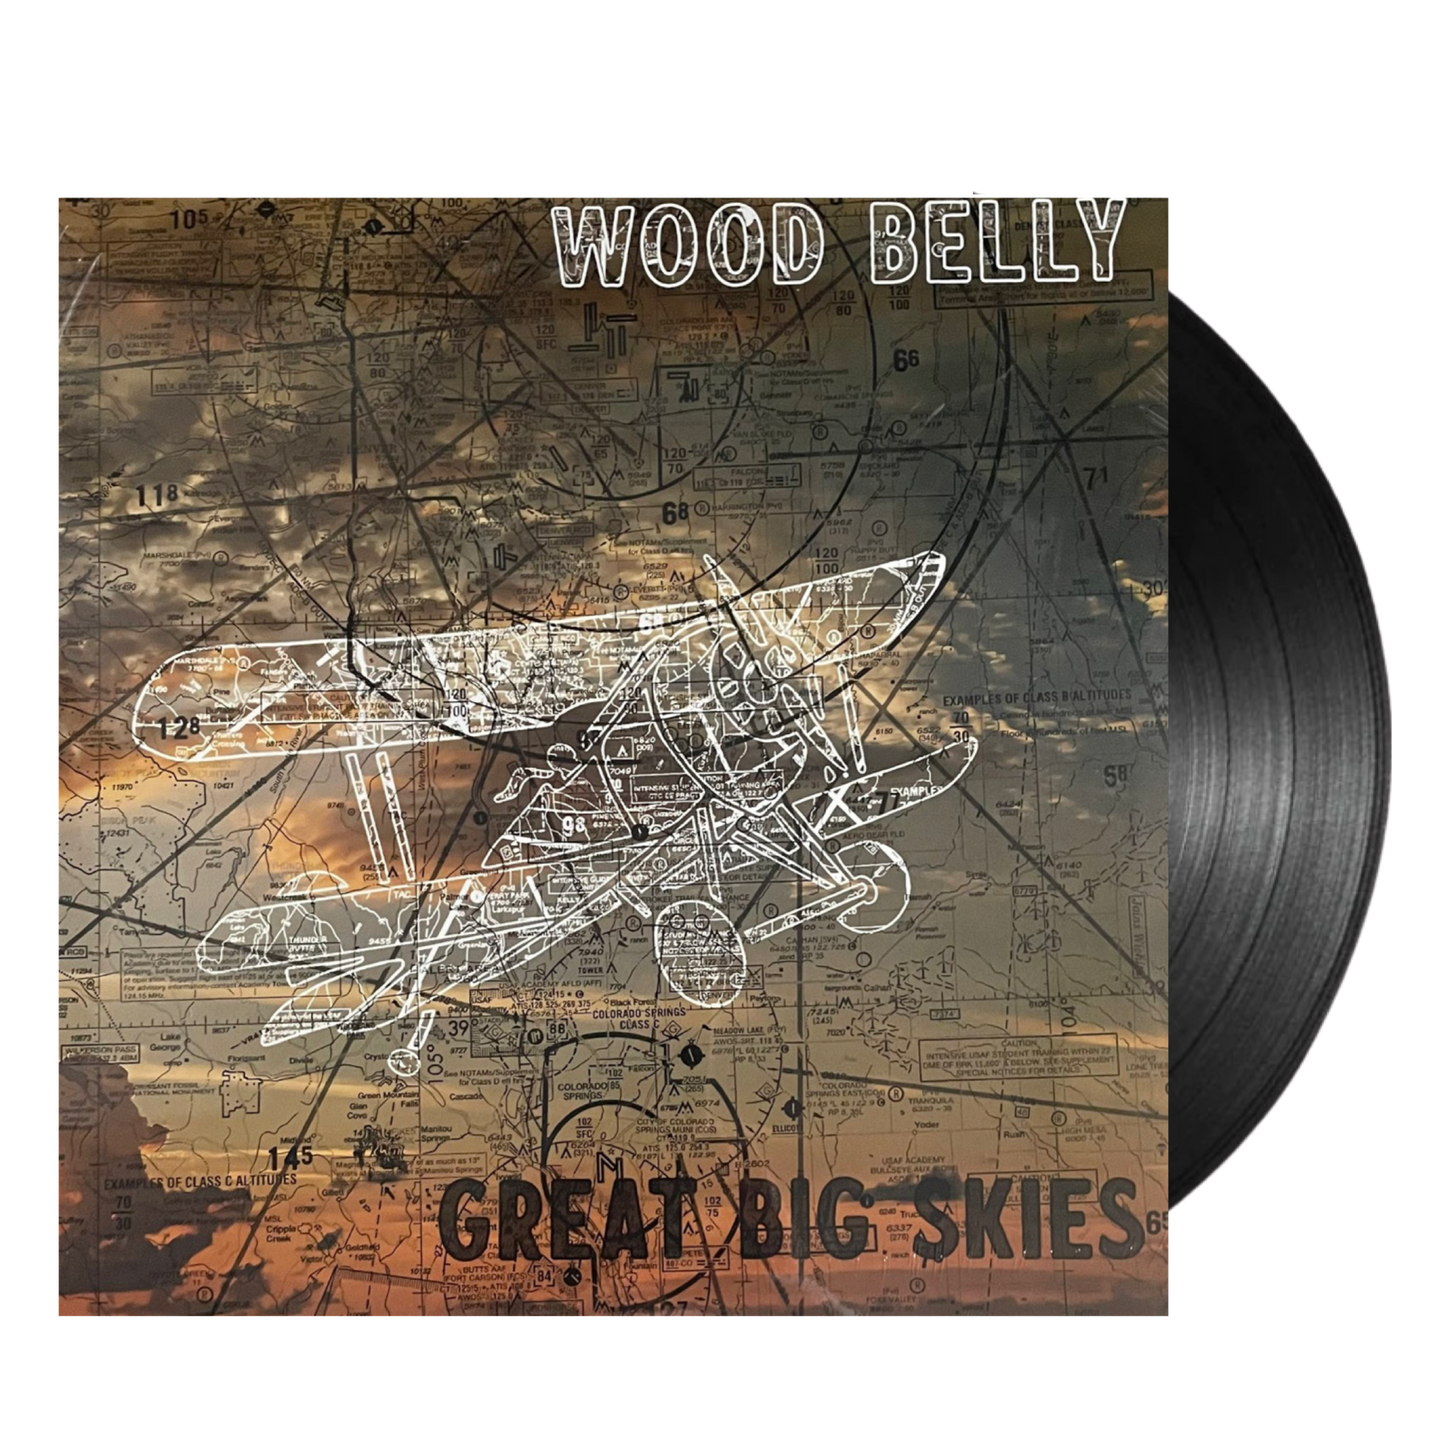 Wood Belly - Great Big Skies Vinyl